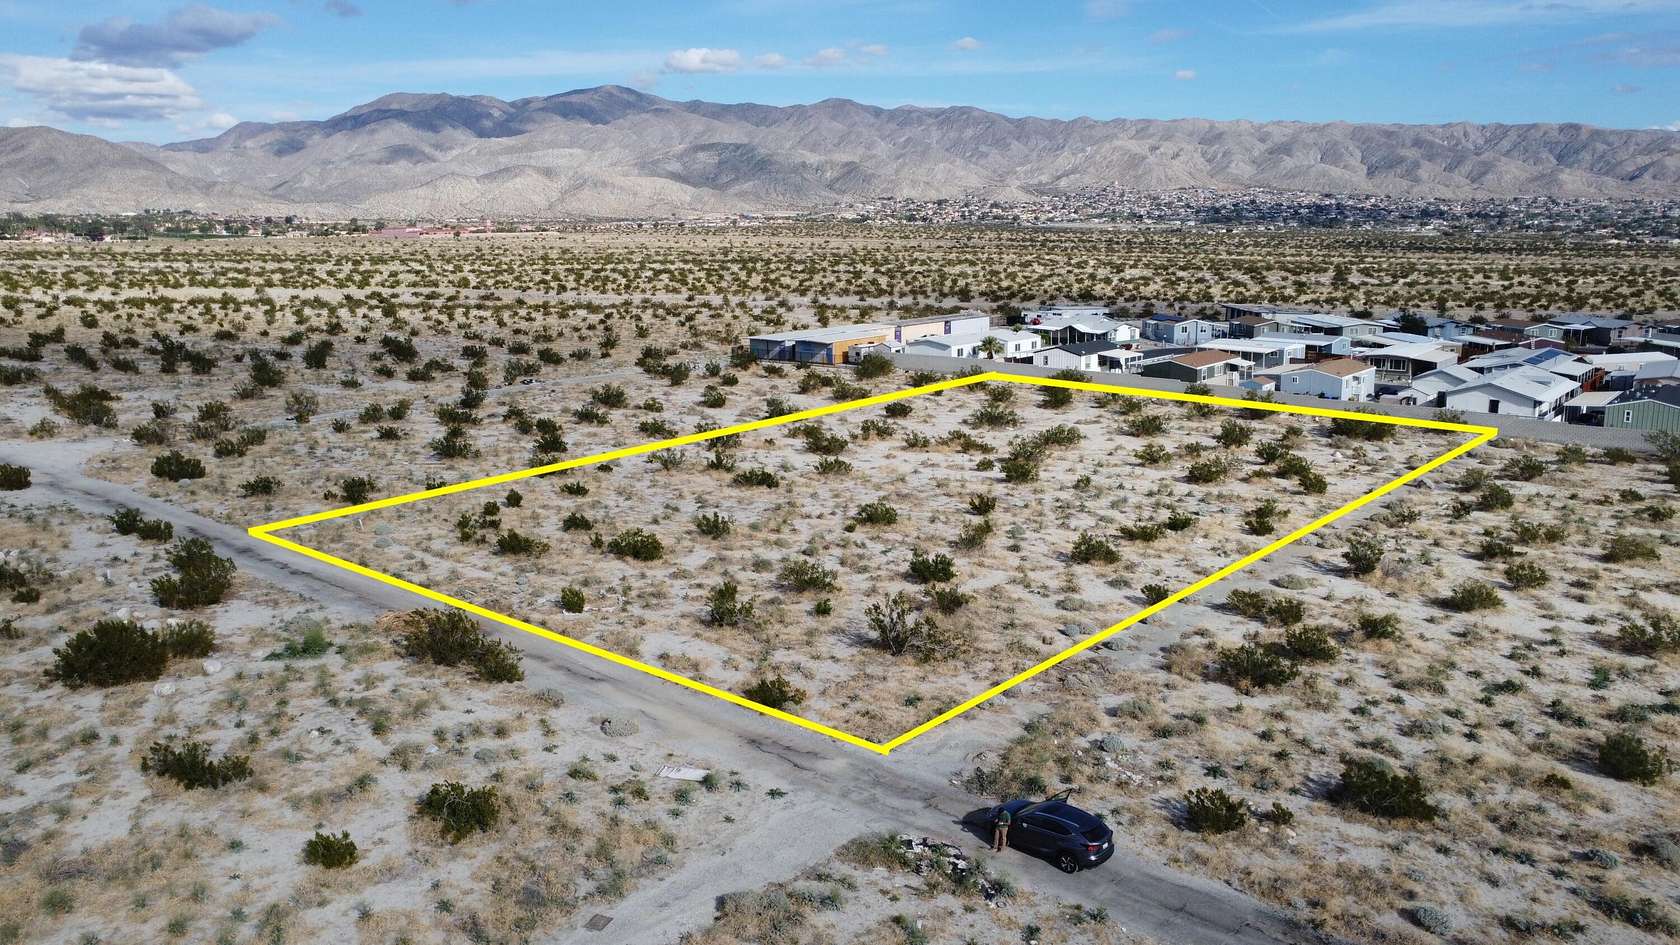 1.3 Acres of Land for Sale in Desert Hot Springs, California